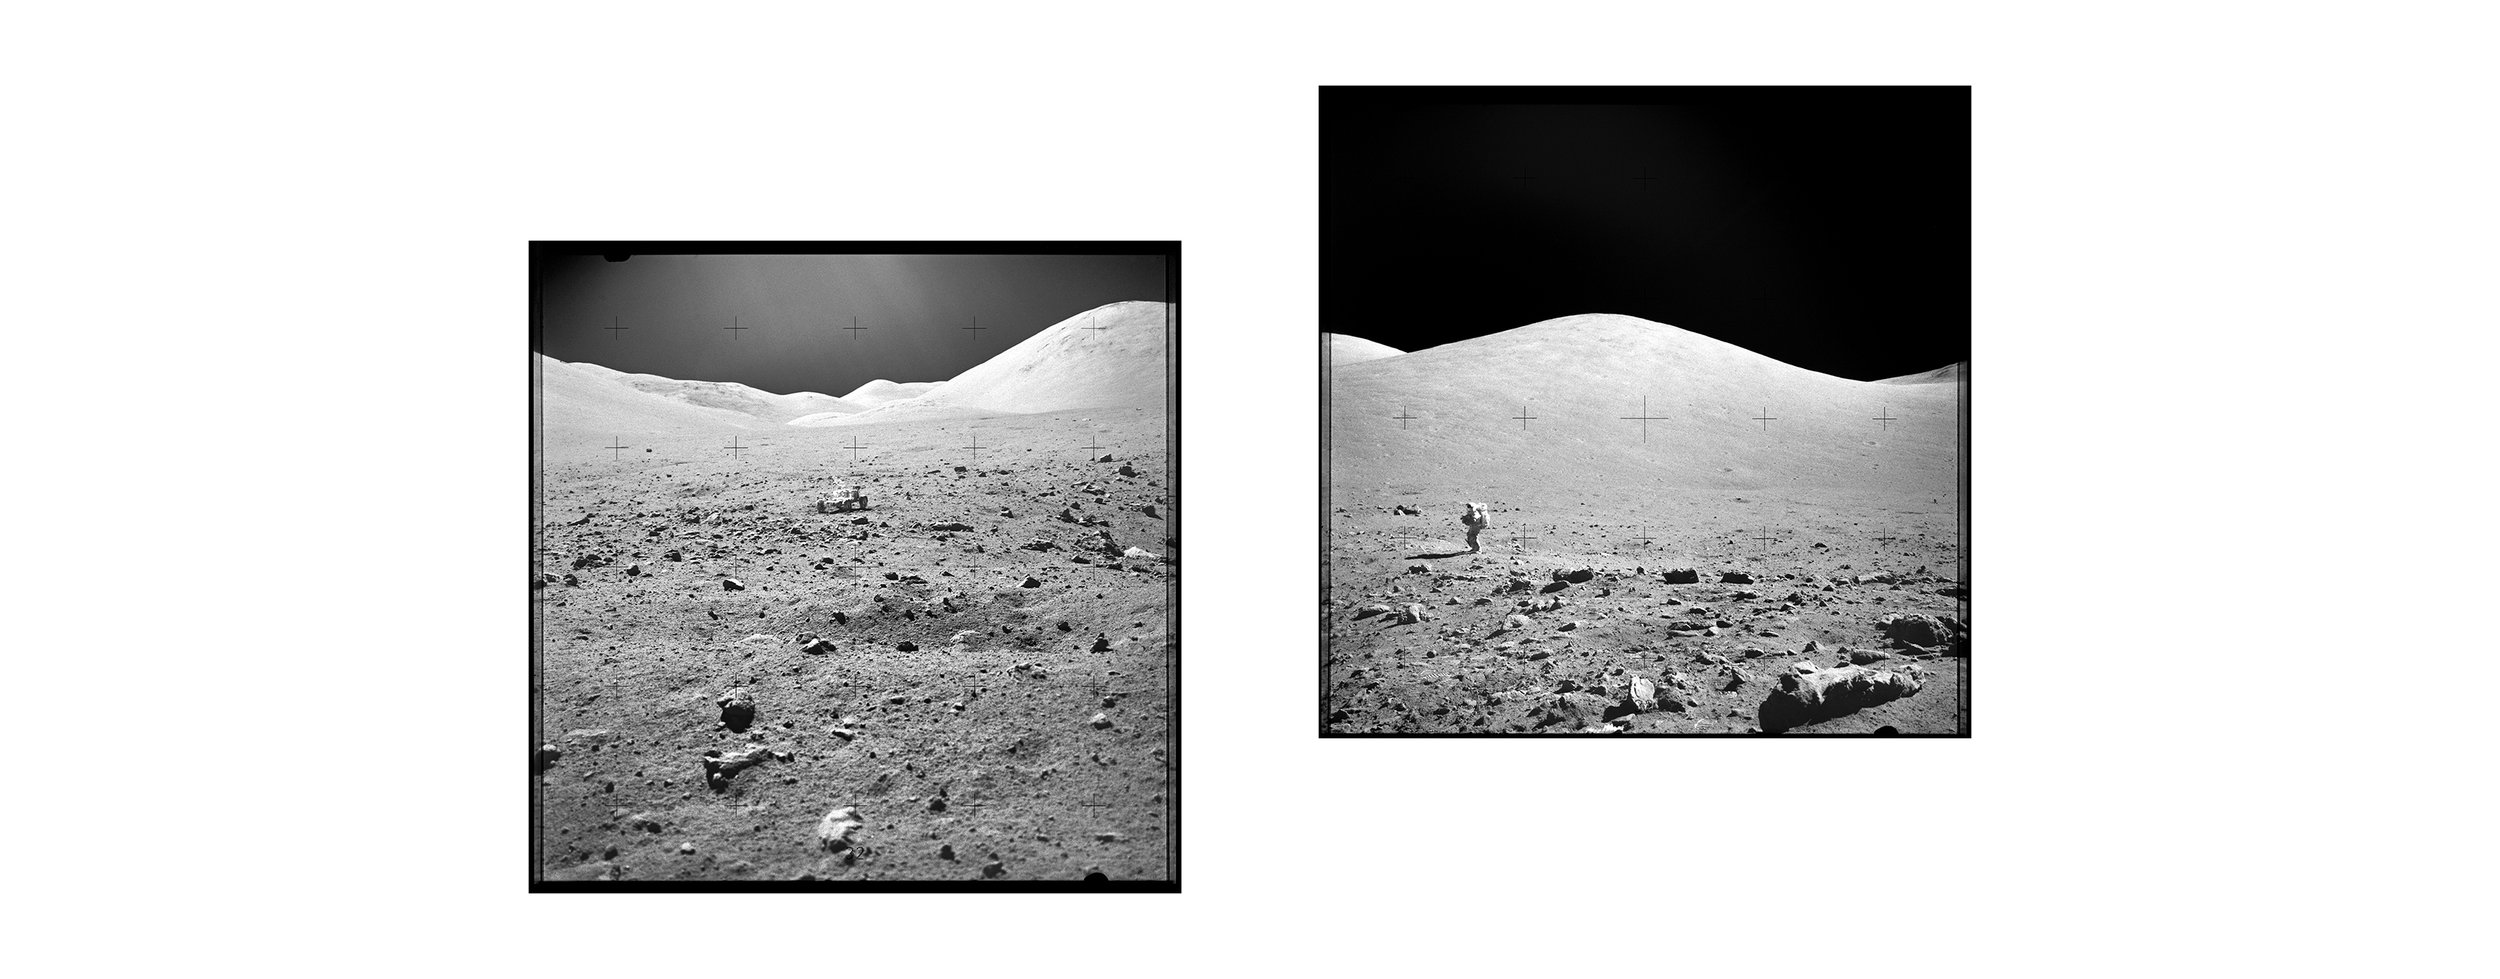  Taurus Mountains with LRV and astronaut (110x60)Apollo 17 Magazine 142/M - NASA photographs 1972 